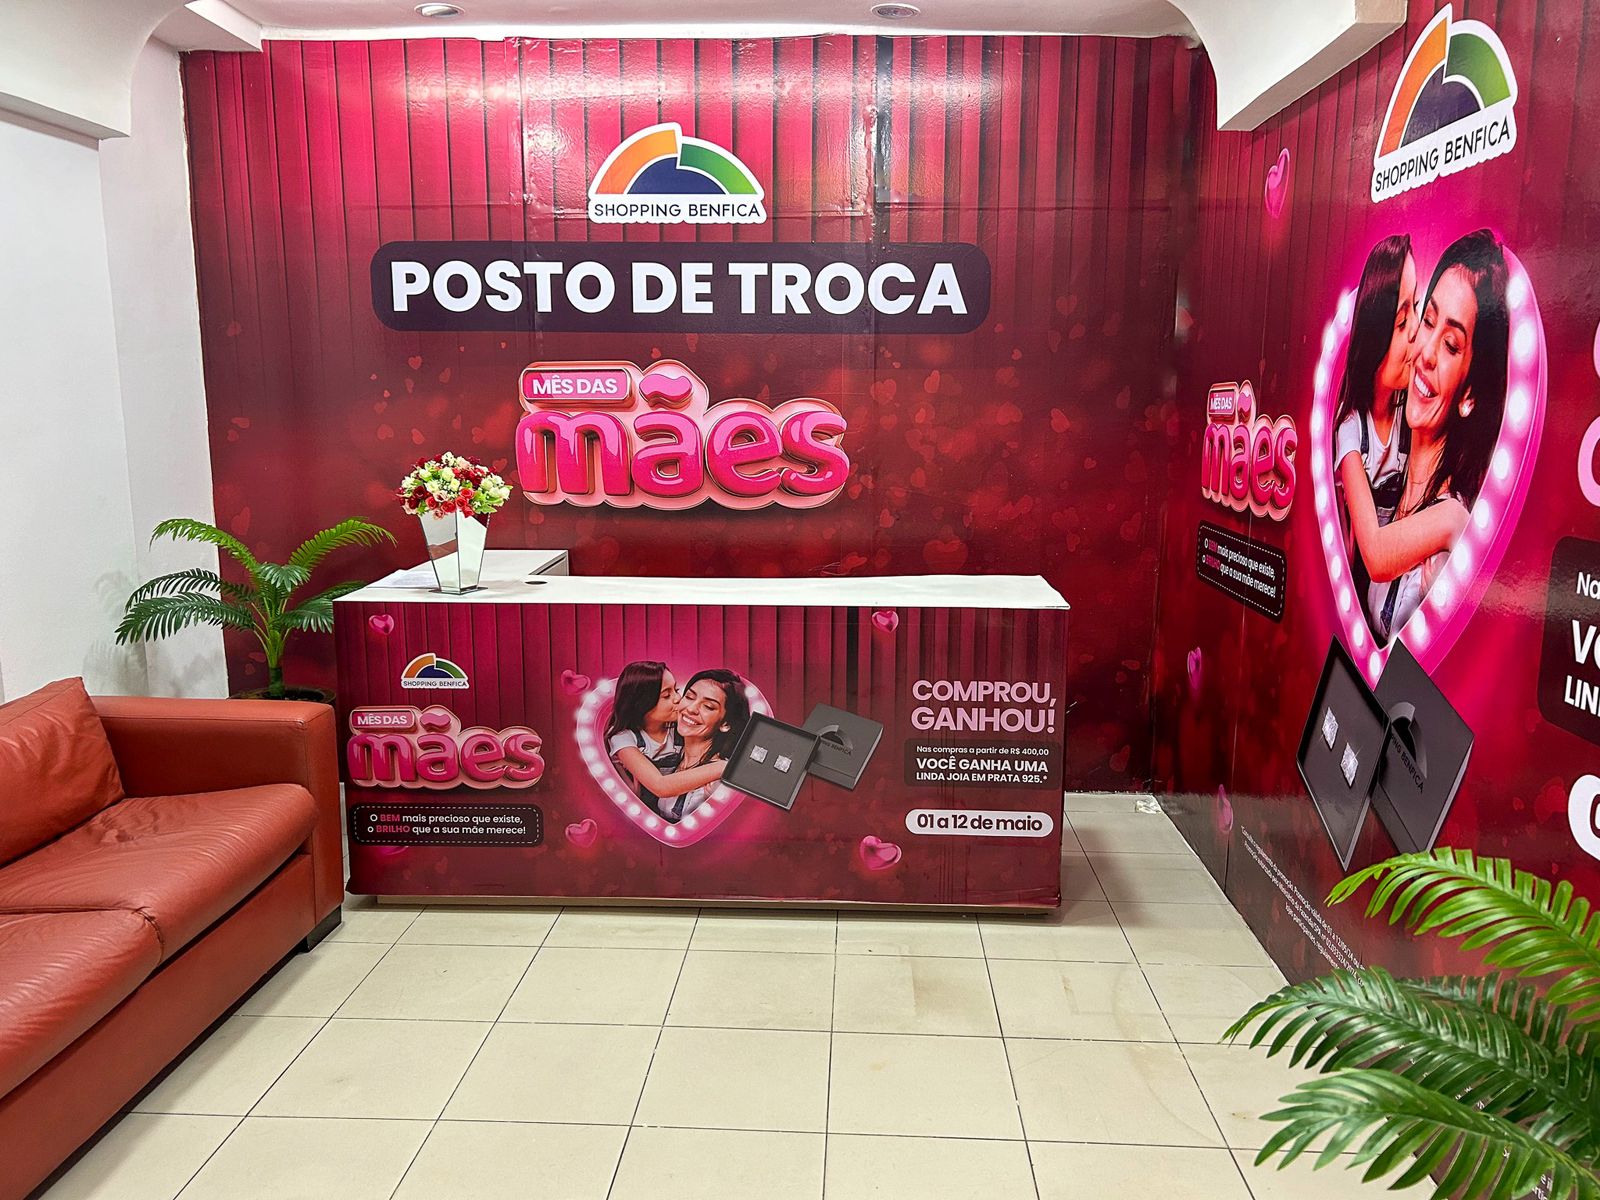 Shopping Benfica celebra o Mês das Mães com a promoção “Compre e Ganhe”